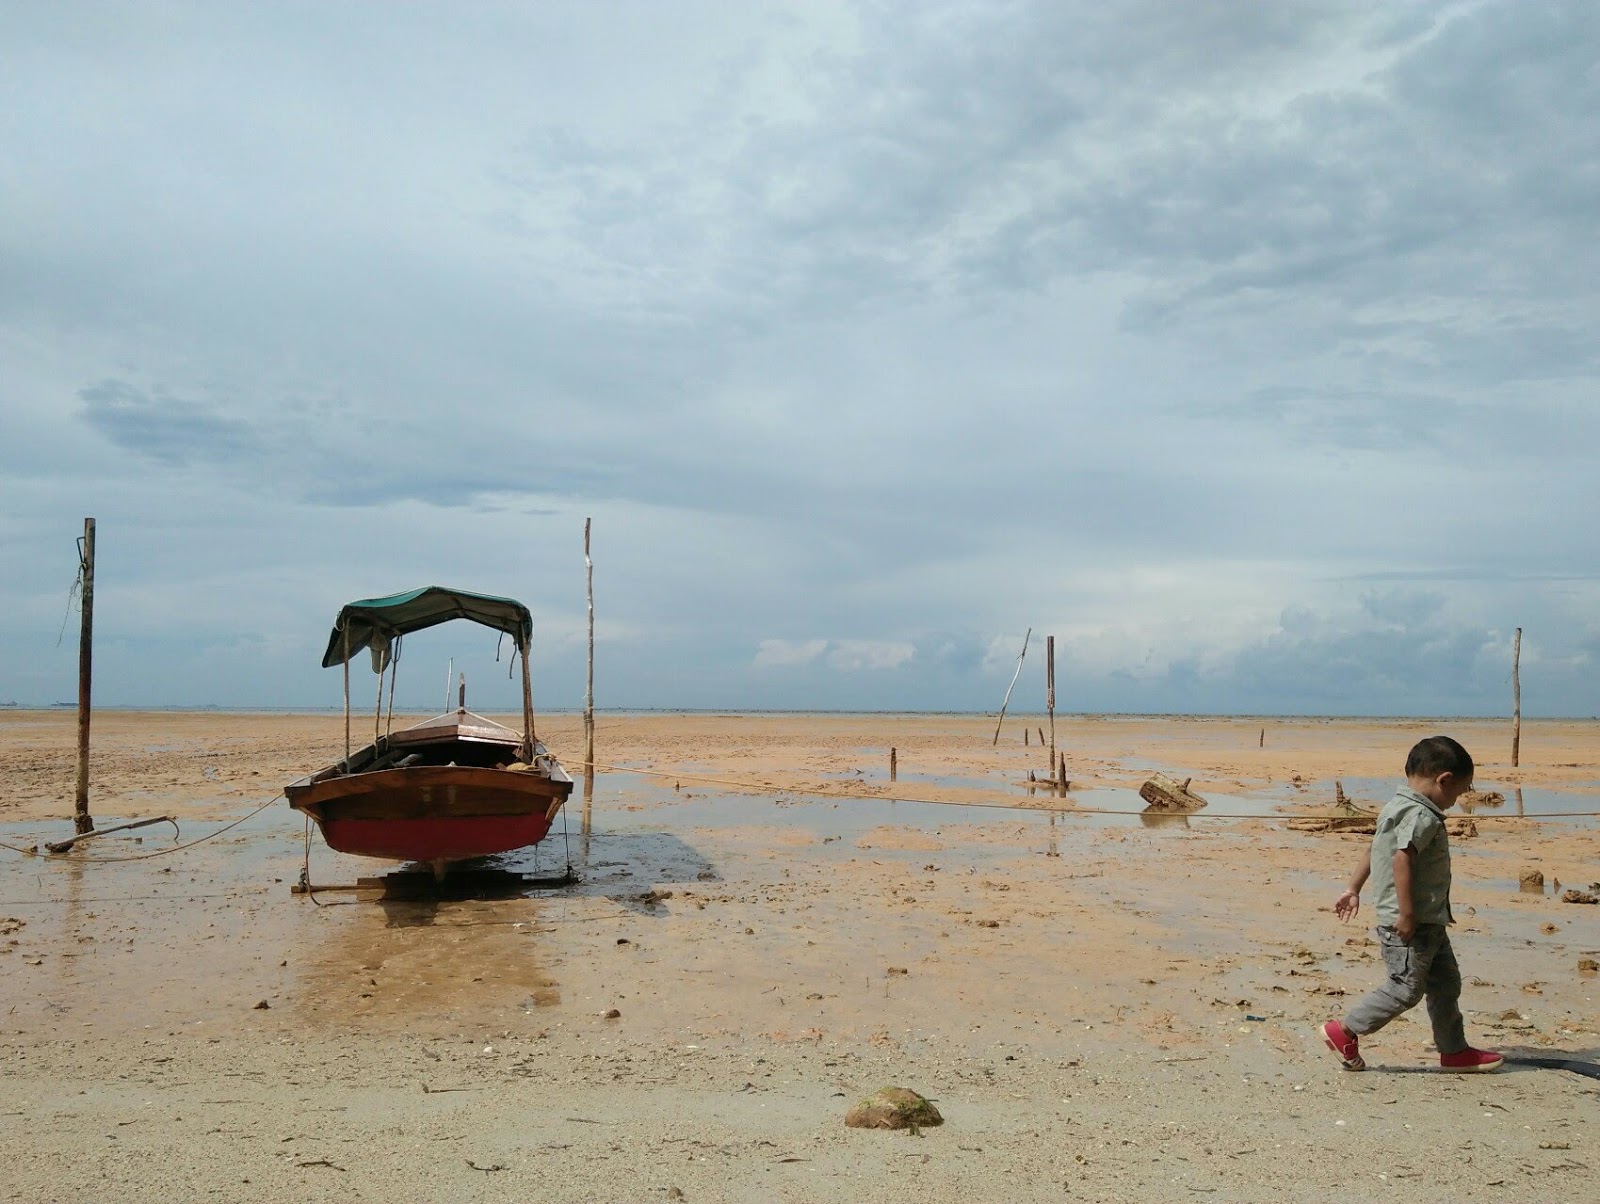 Pantai Tj. Bemban'in fotoğrafı çok temiz temizlik seviyesi ile